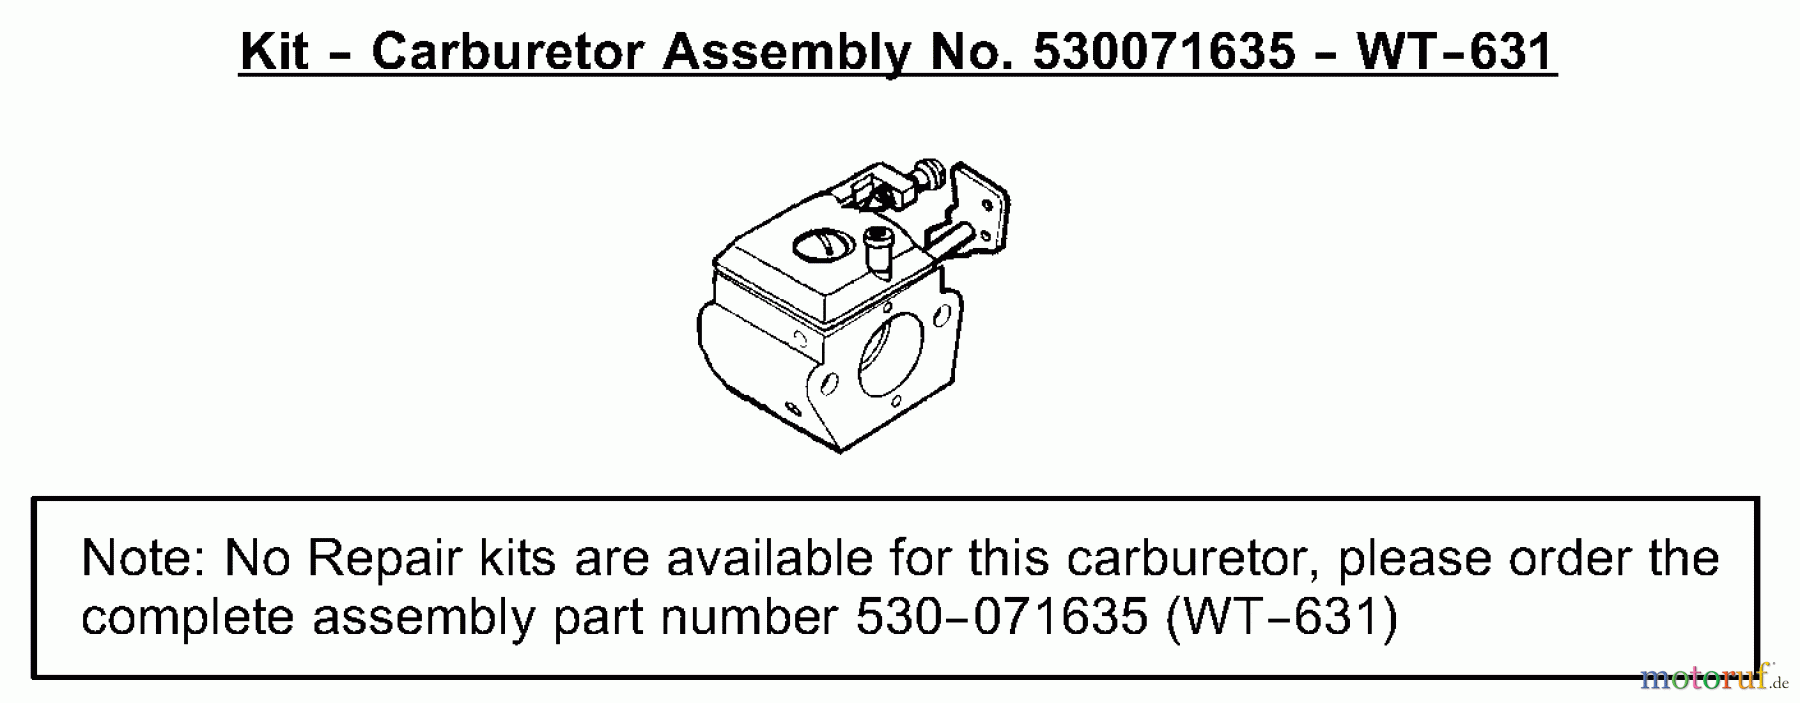  Poulan / Weed Eater Motorsensen, Trimmer SST25 (Type 1) - Weed Eater Featherlite HO String Trimmer Carburetor Assembly (WT-631) P/N 530071635